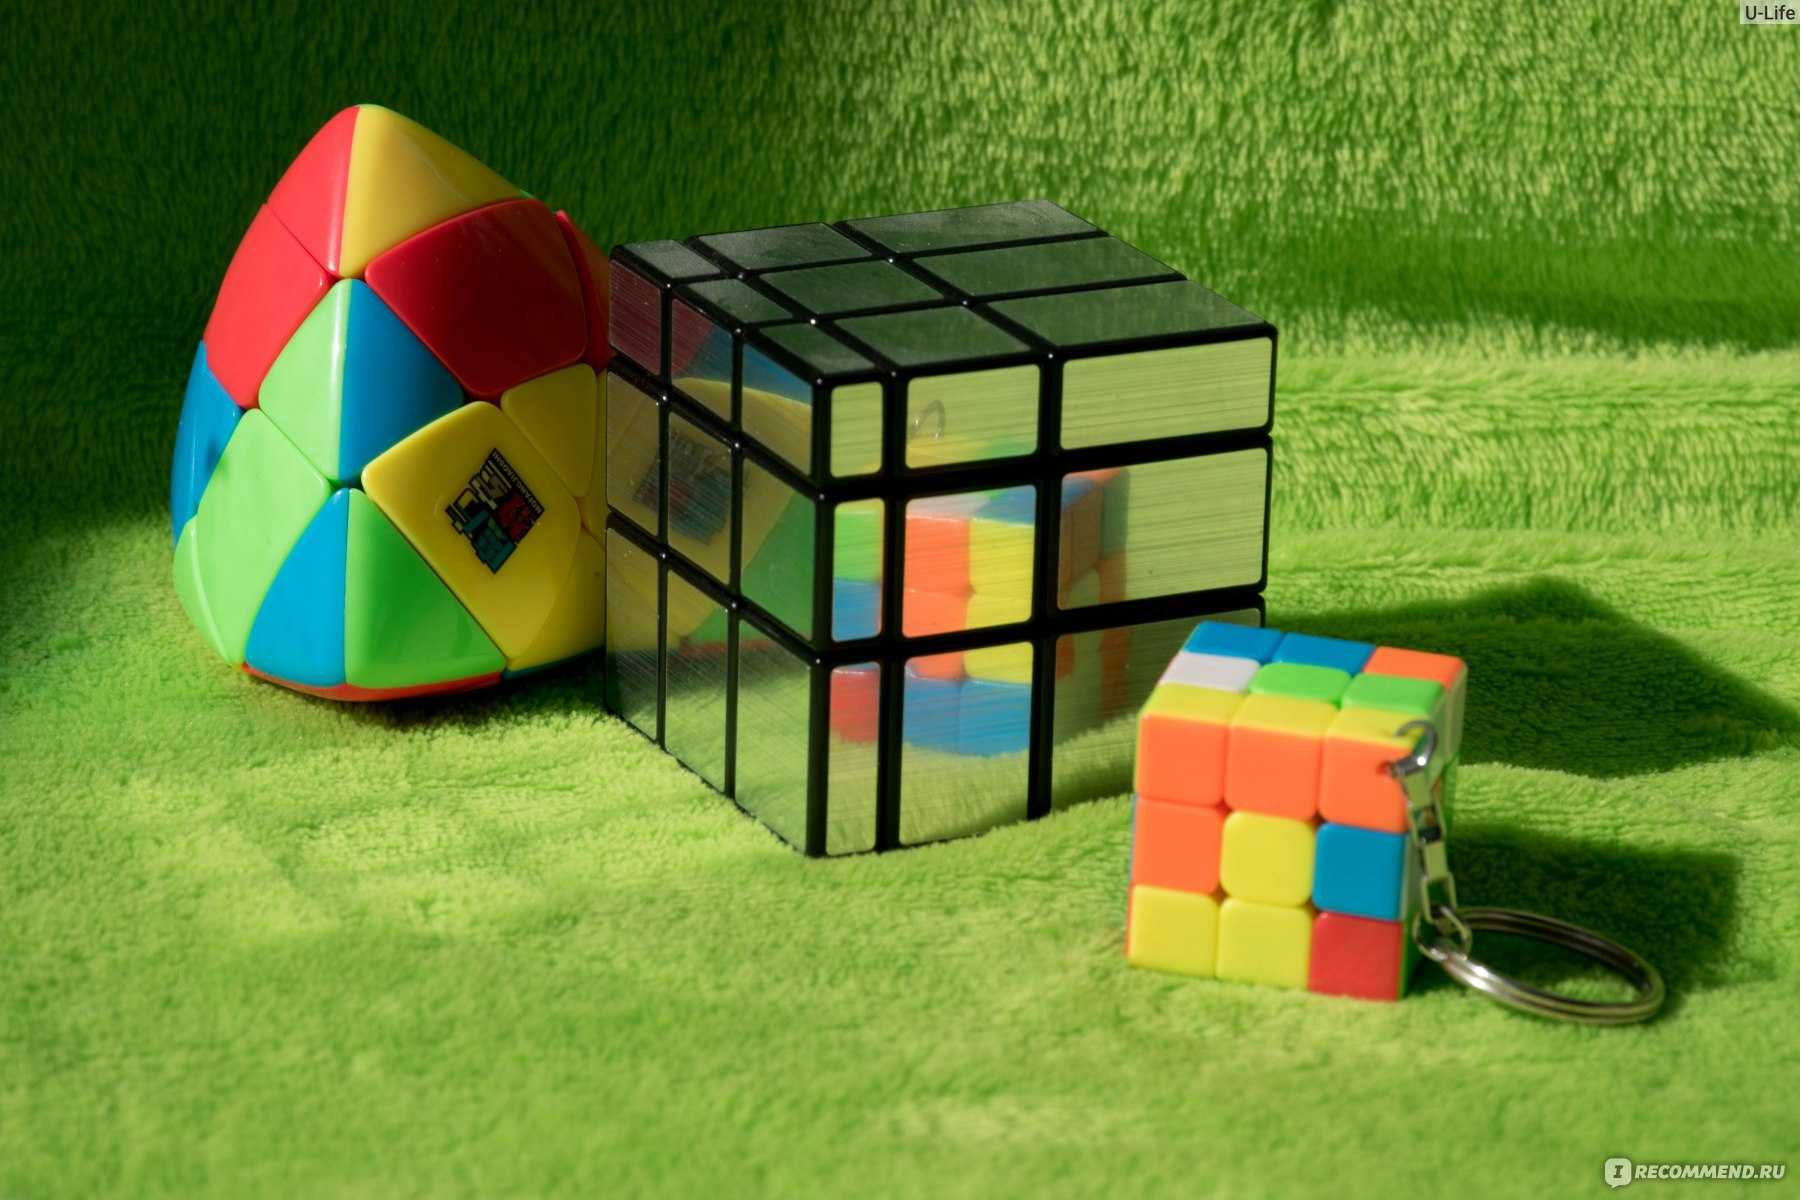 Обзор кубиков рубика particula. научат собирать этот квест за пару минут, а еще превращаются в синтезатор (!!)